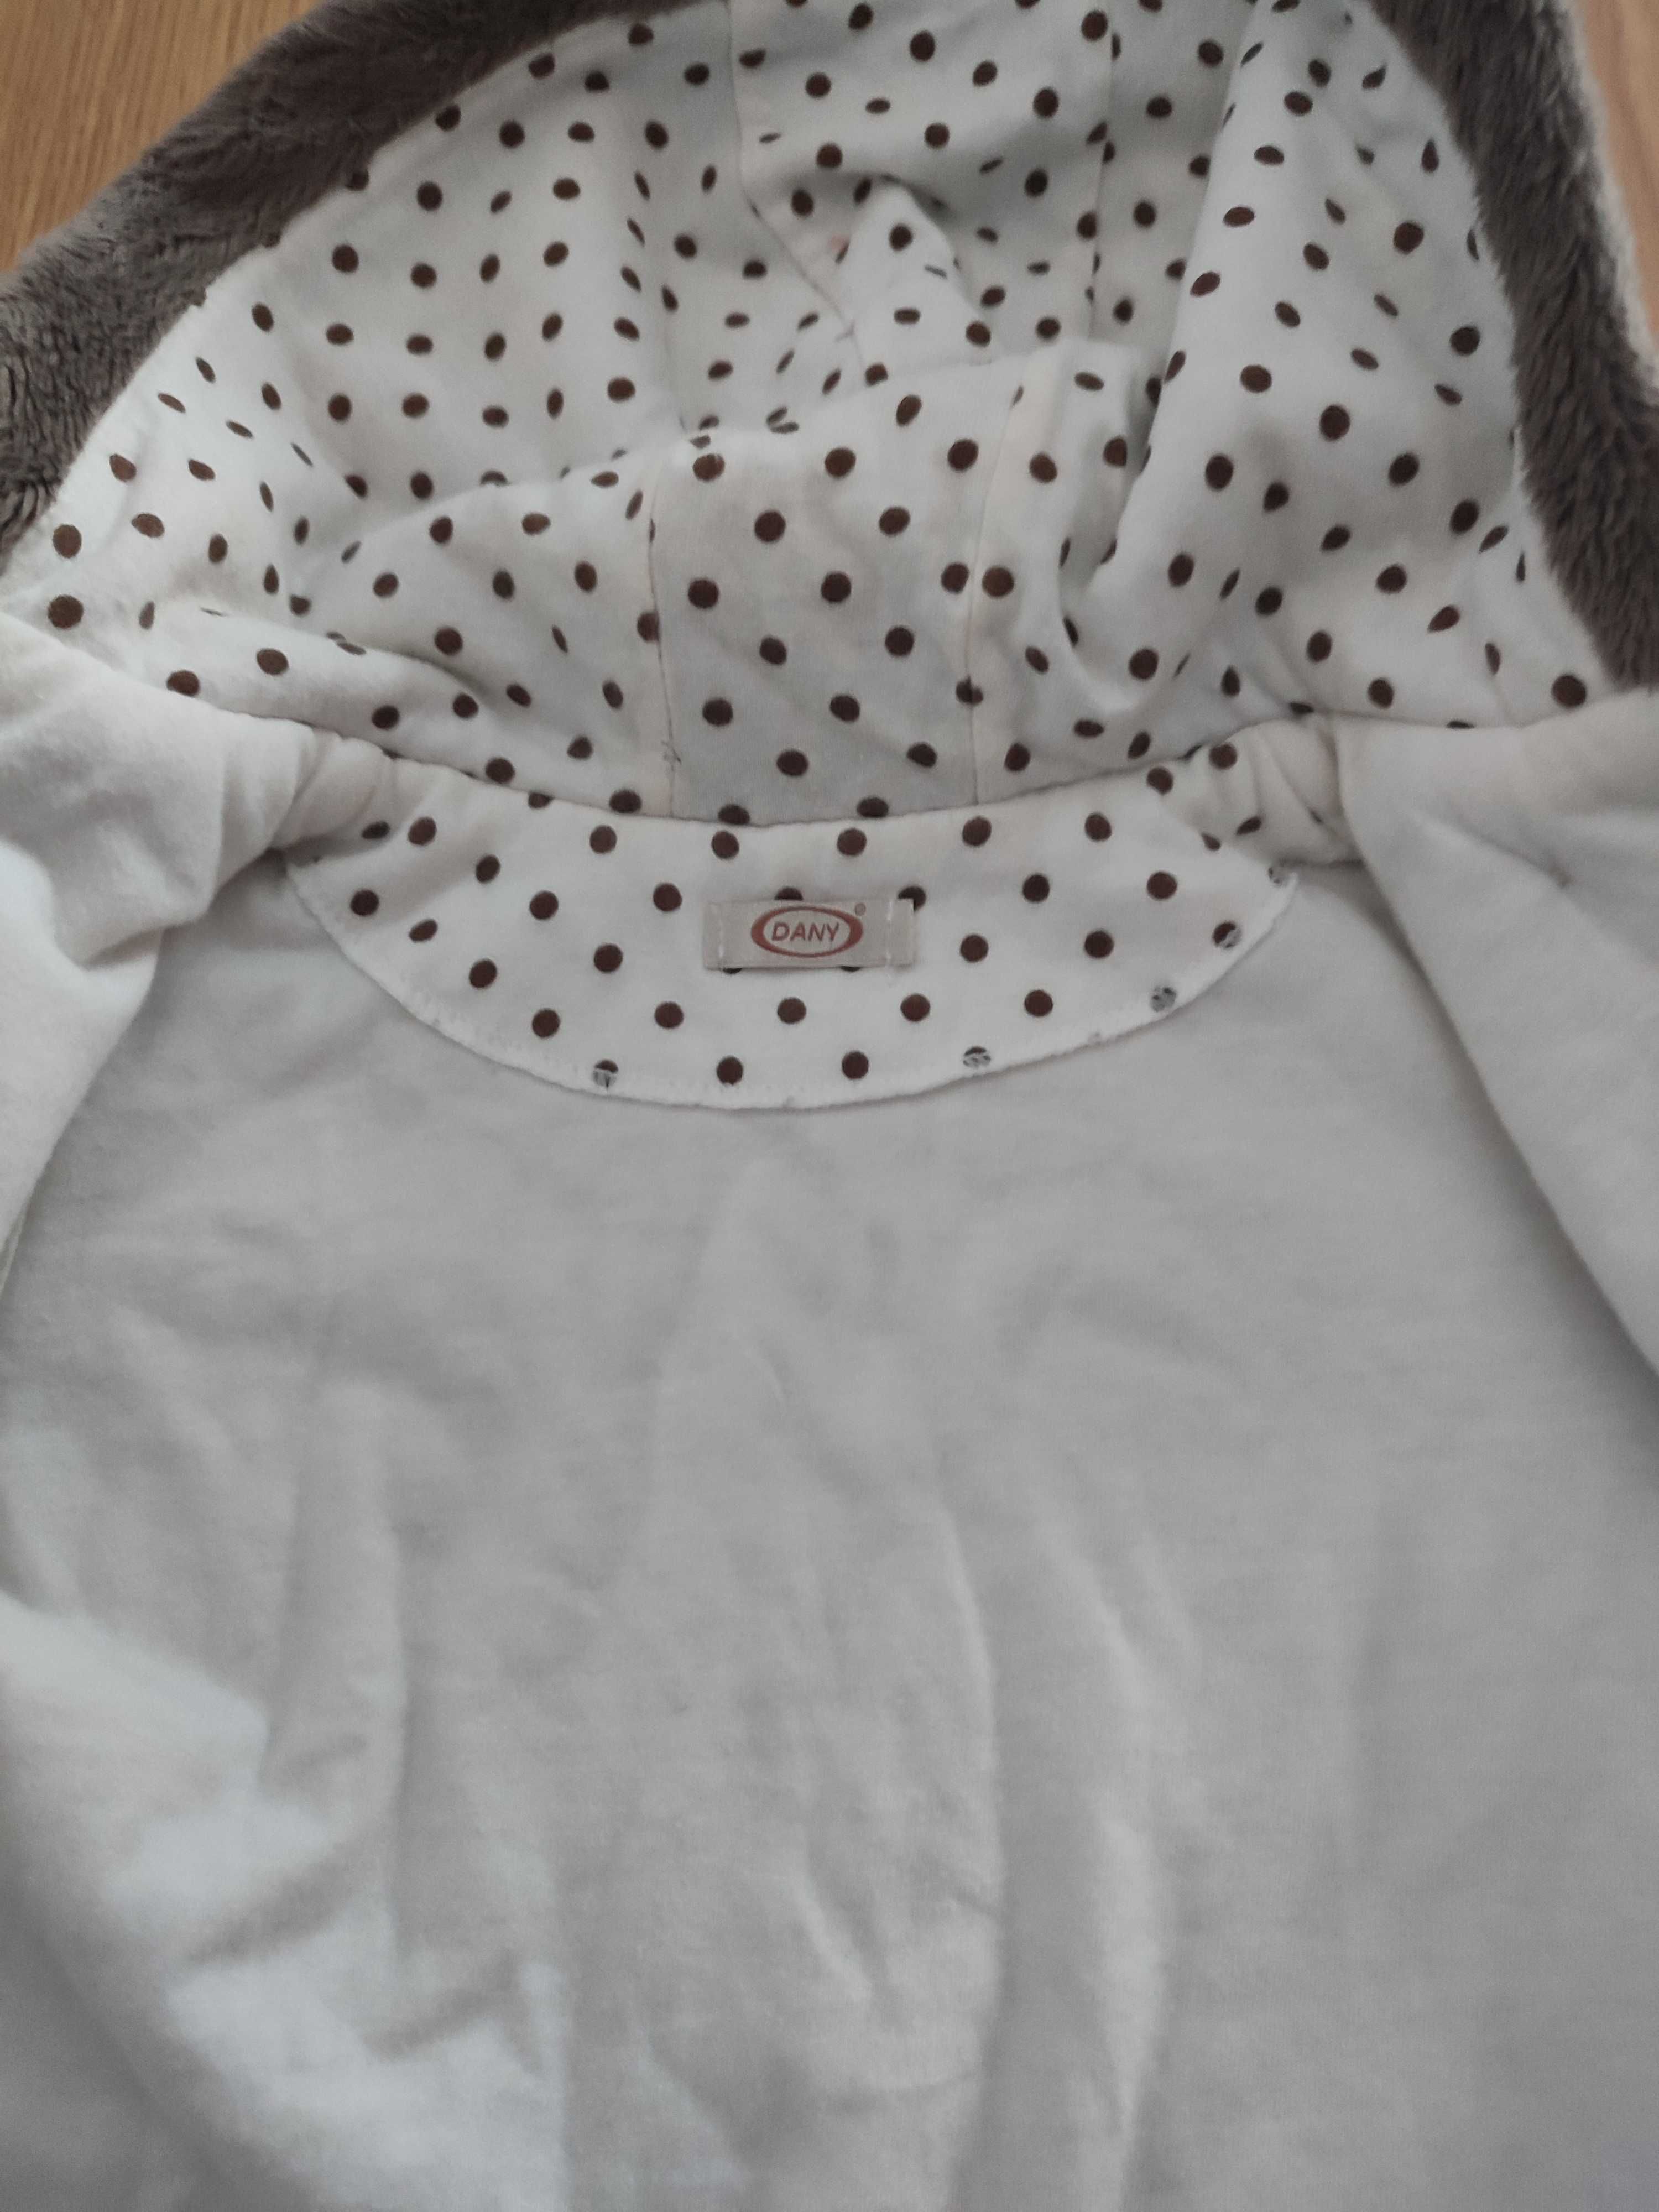 Kurtka, kubraczek, płaszczyk, bluza niemowlęca miś z kapturem wiosenna